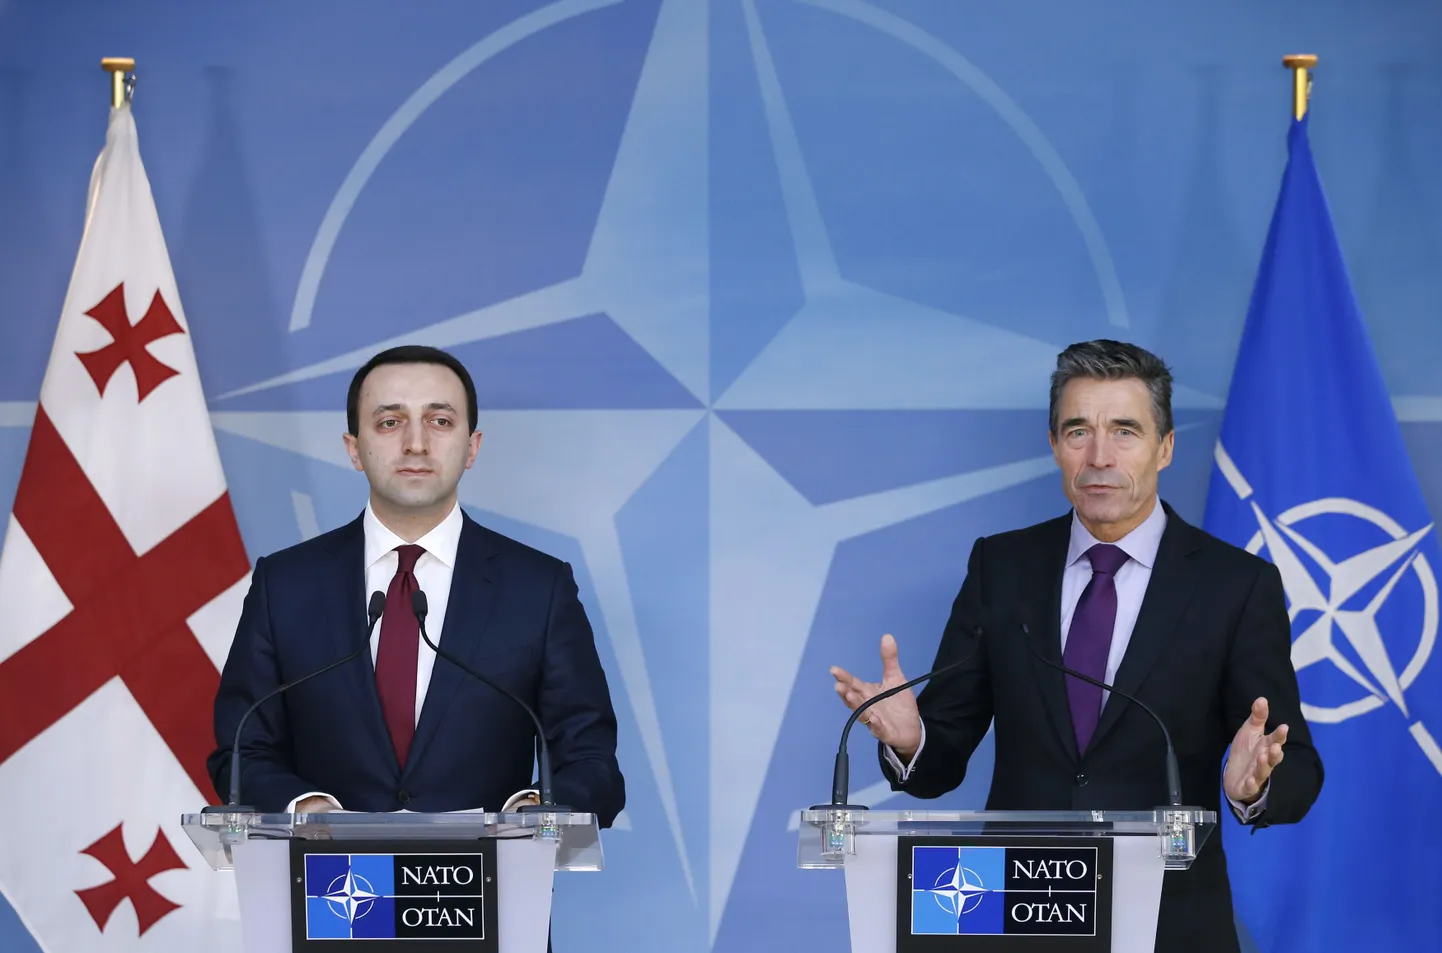 Gruusia peaminister Irakli Garibašvili ja NATO peasekretär Anders Fogh Rasmussen 5. veebruaril 2014 Brüsselis.